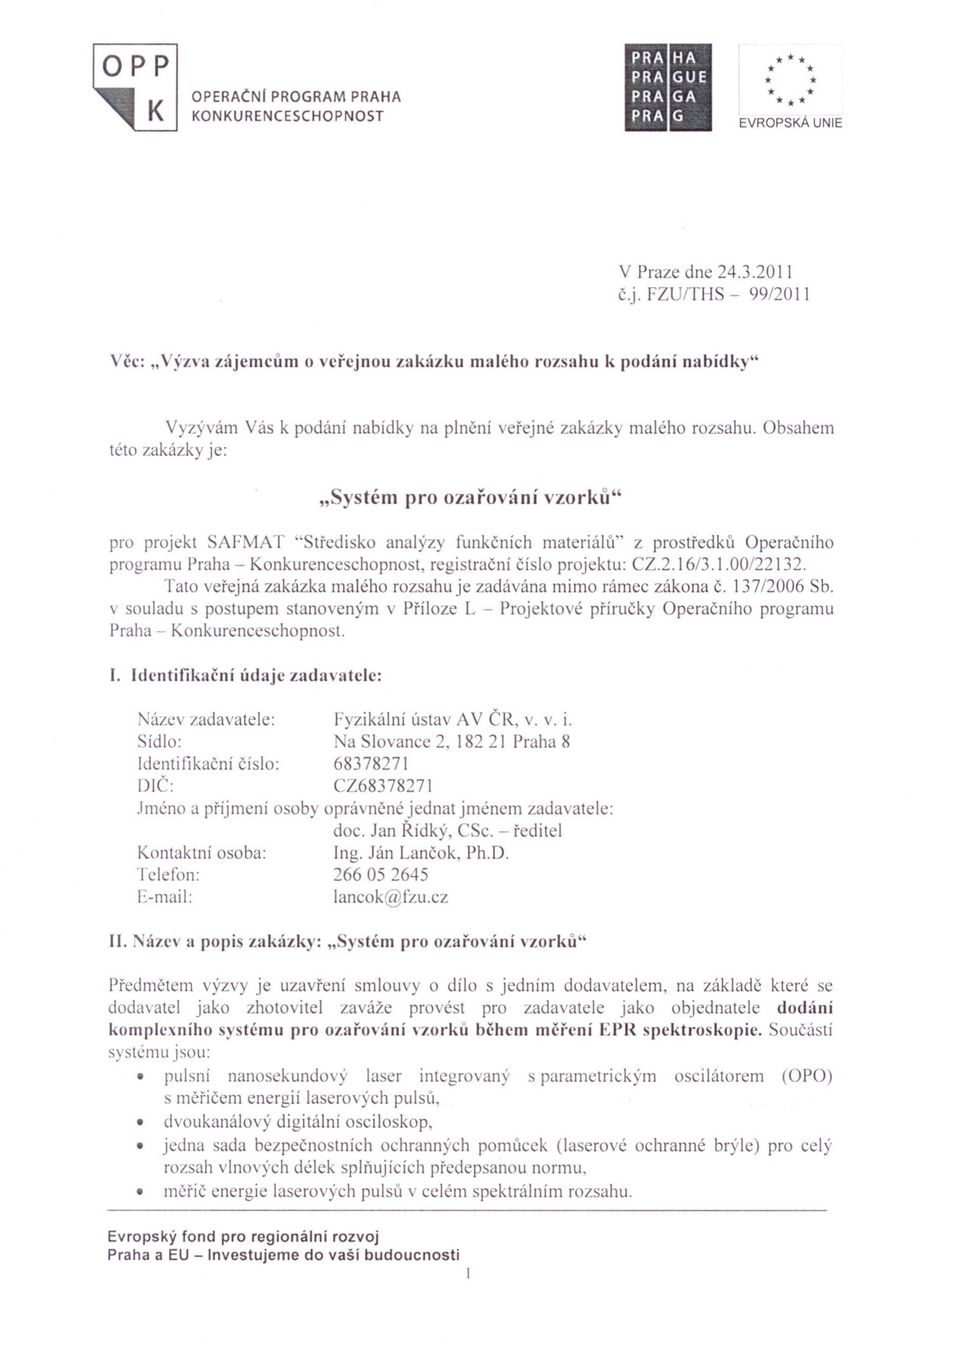 Obsahem této zakázky je: "Systém pro ozarování vzorku" pro projekt SAFMAT "Stredisko analýzy funkcních materiál li" z prostredkli Operacního programu Praha - Konkurenceschopnost, registracní císlo